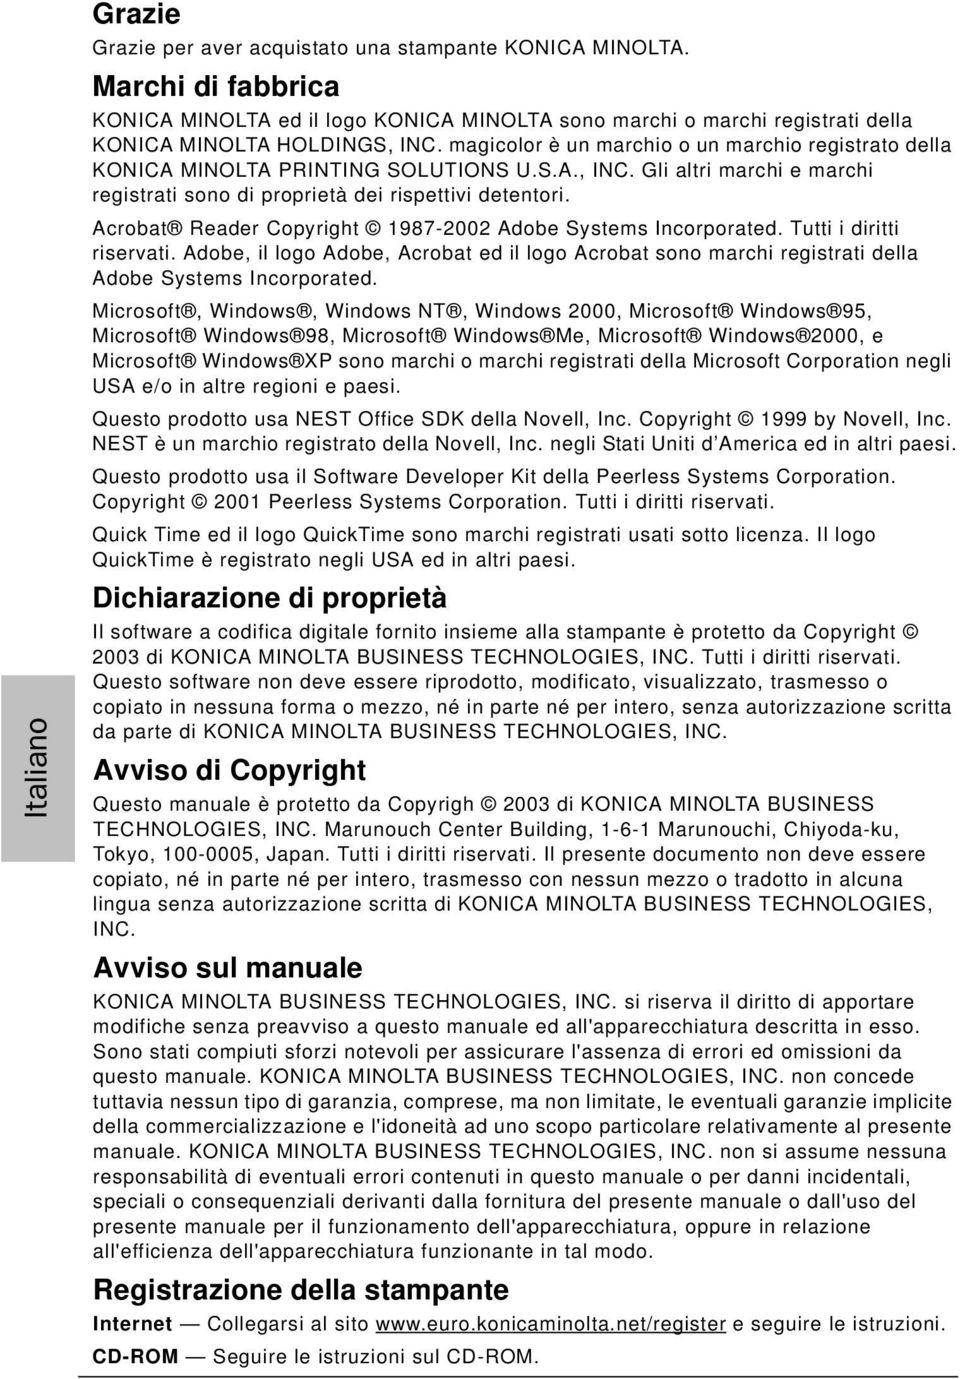 Acrobat Reader Copyright 1987-2002 Adobe Systems Incorporated. Tutti i diritti riservati. Adobe, il logo Adobe, Acrobat ed il logo Acrobat sono marchi registrati della Adobe Systems Incorporated.